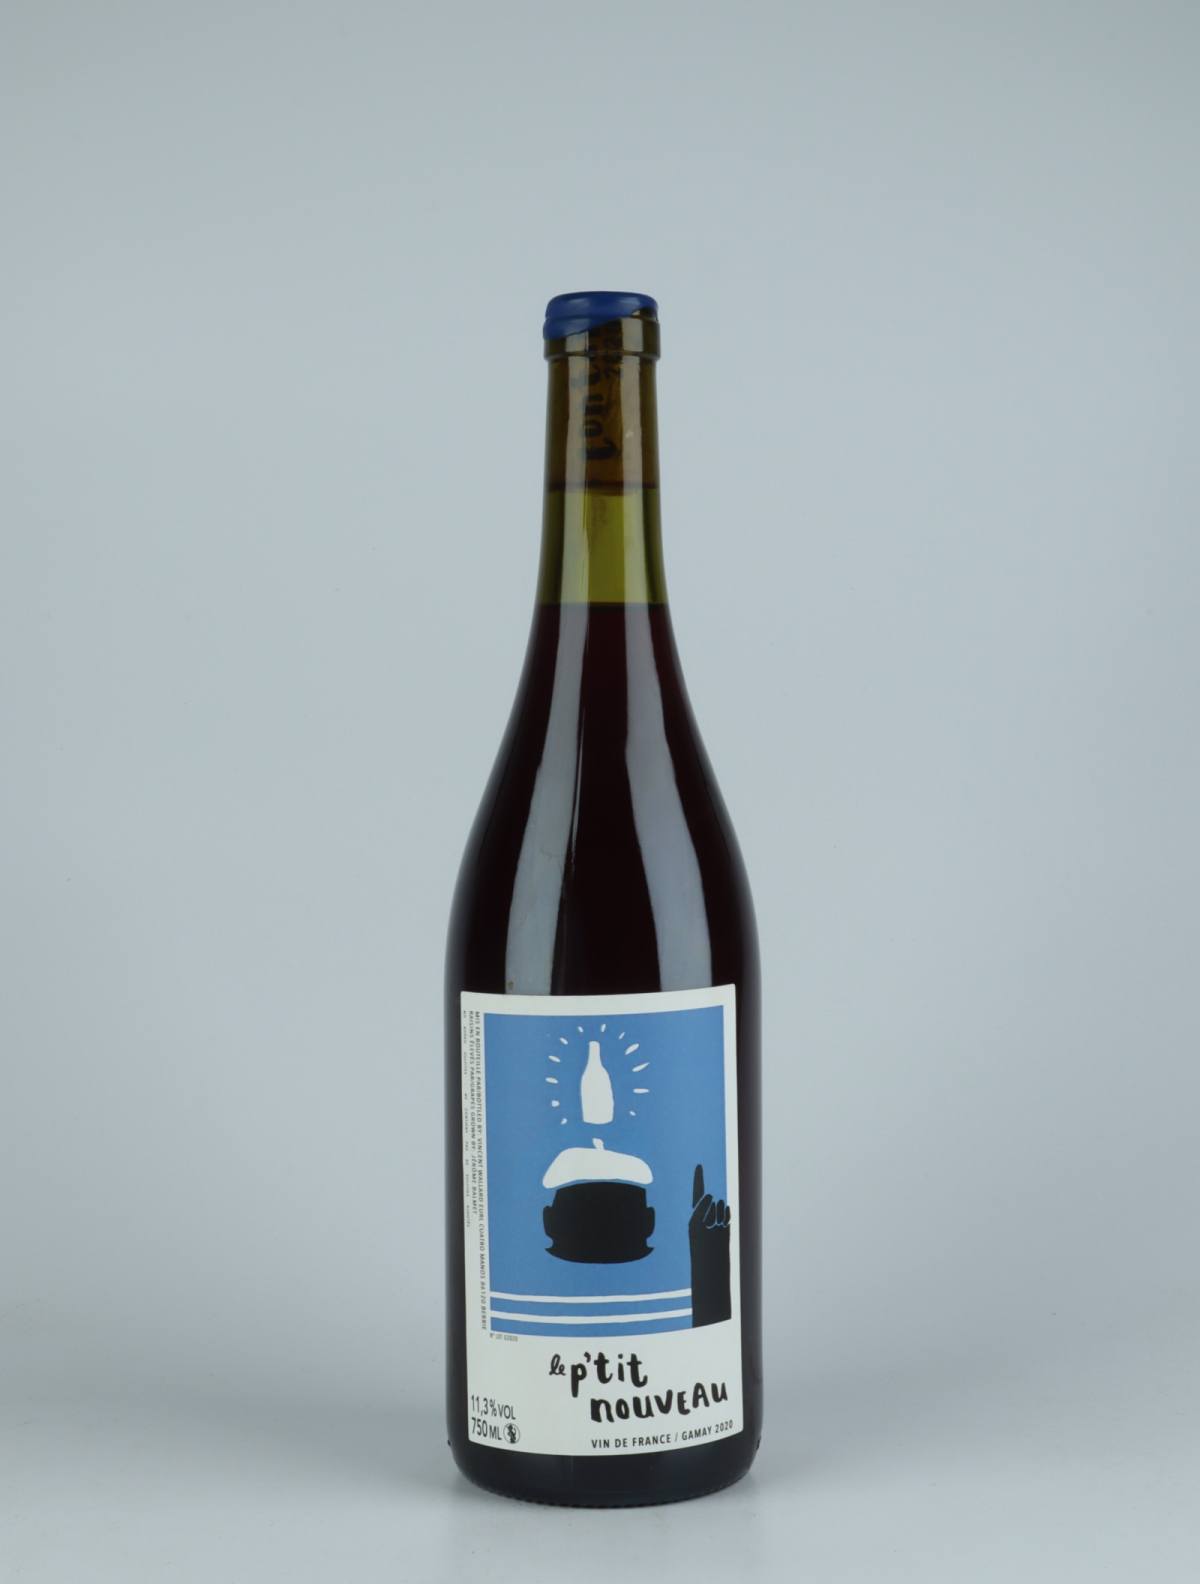 En flaske 2020 Petit Nouveau Gamay Rødvin fra Vincent Wallard, Loire i Frankrig